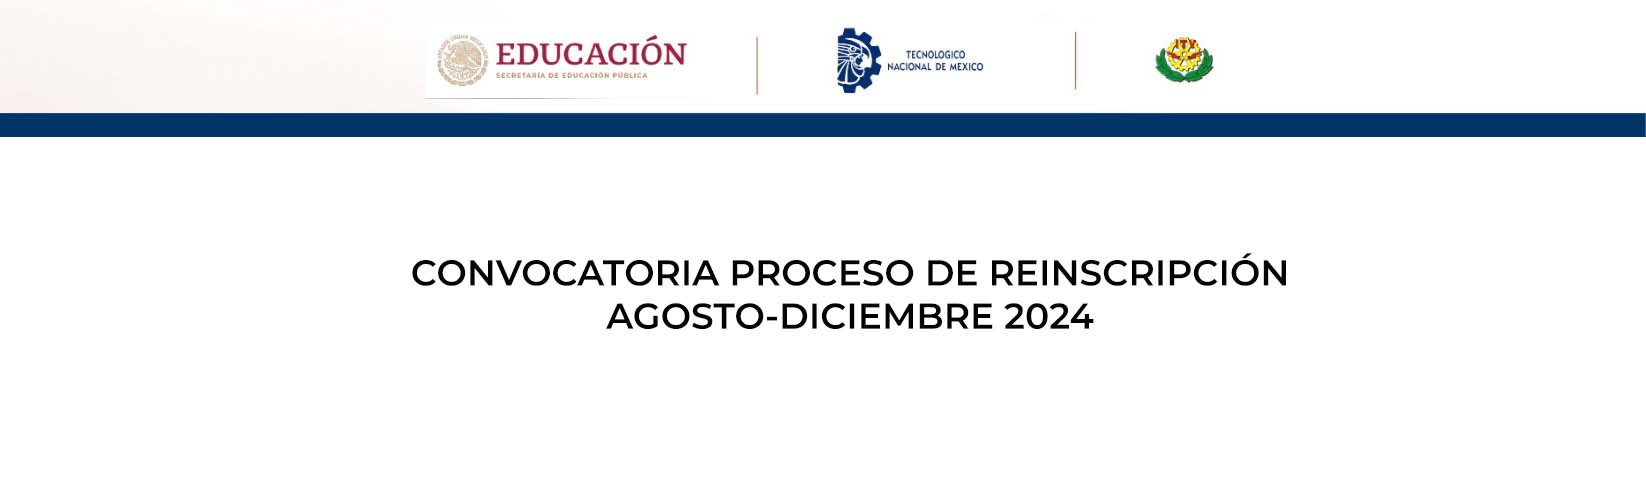 PROCESO DE REINSCRIPCIÓN AGOSTO DICIEMBRE 2024-2 (Actualización 3)